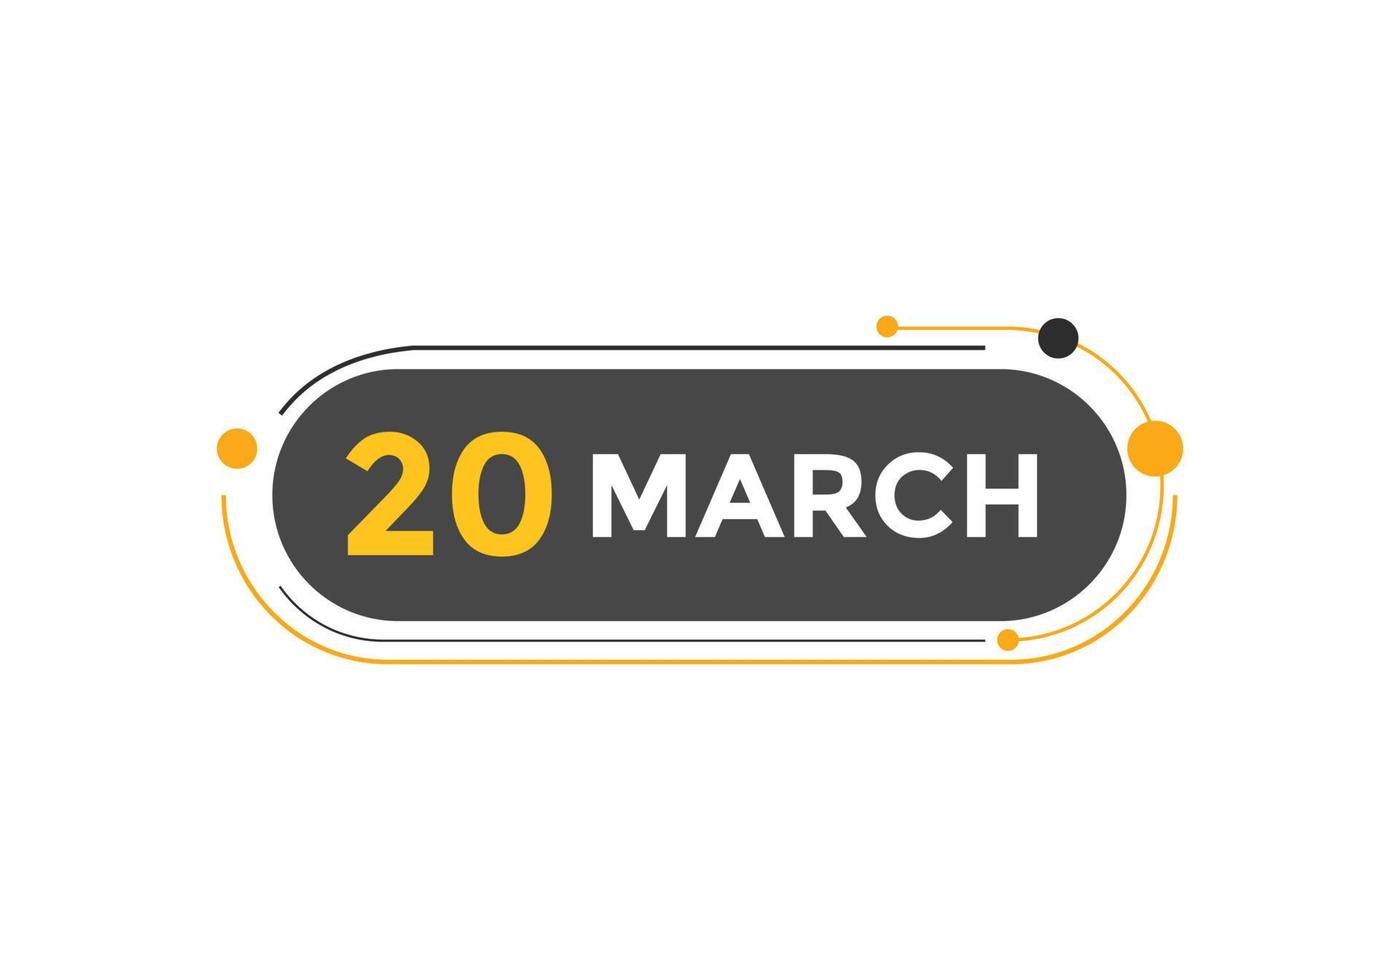 marzo 20 calendario promemoria. 20 marzo quotidiano calendario icona modello. calendario 20 marzo icona design modello. vettore illustrazione